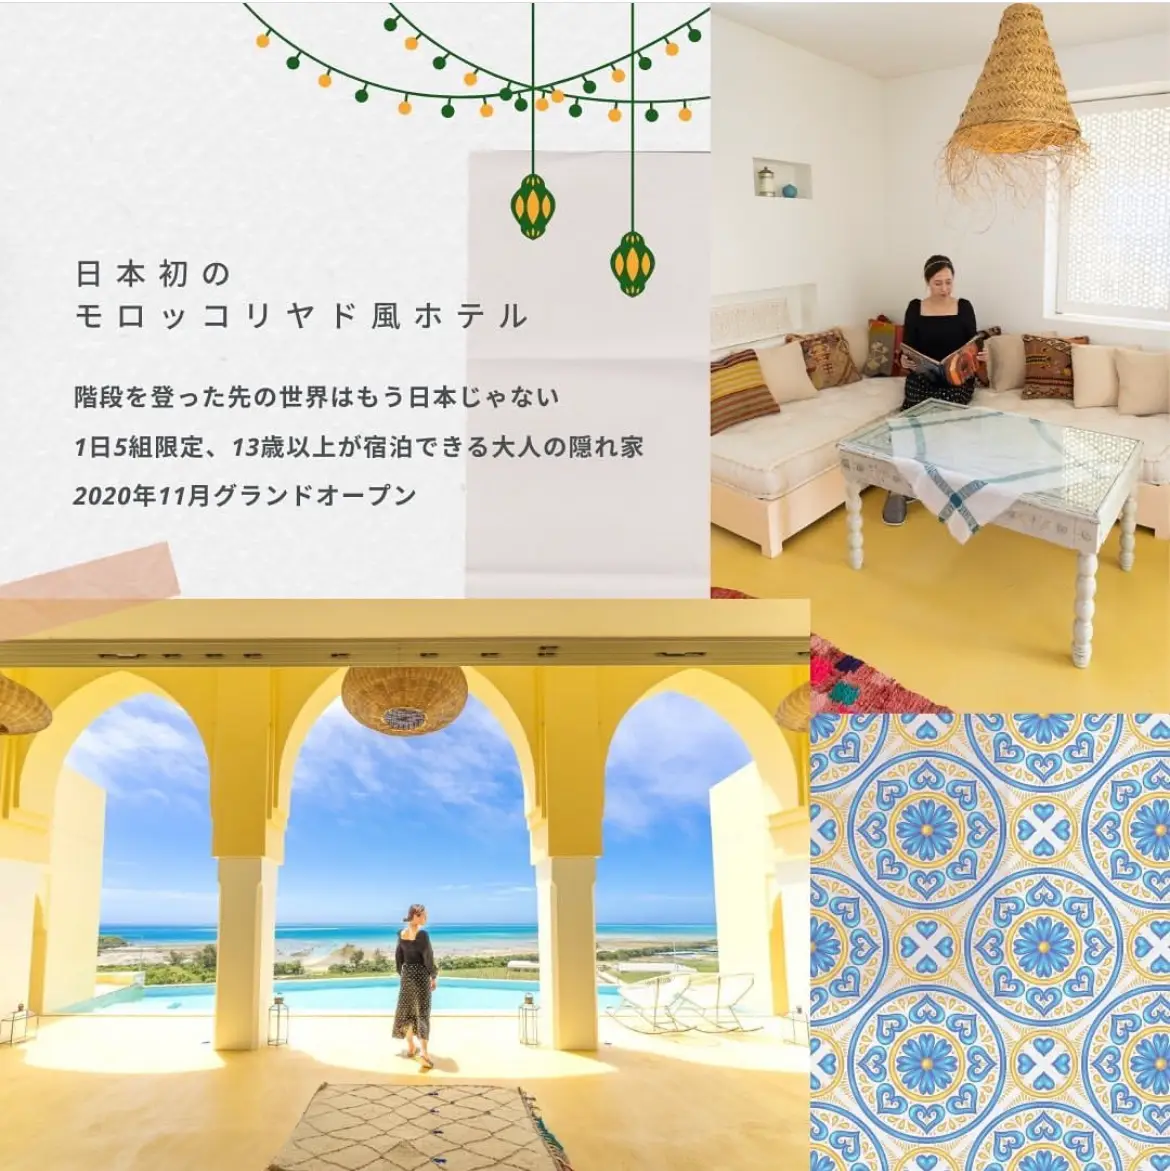 扉をあけるとそこはモロッコだった😳✨細部に至るまでモロッコ産にこだわった美しすぎるホテル   | もぐもぐ世界旅が投稿したフォトブック |  Lemon8